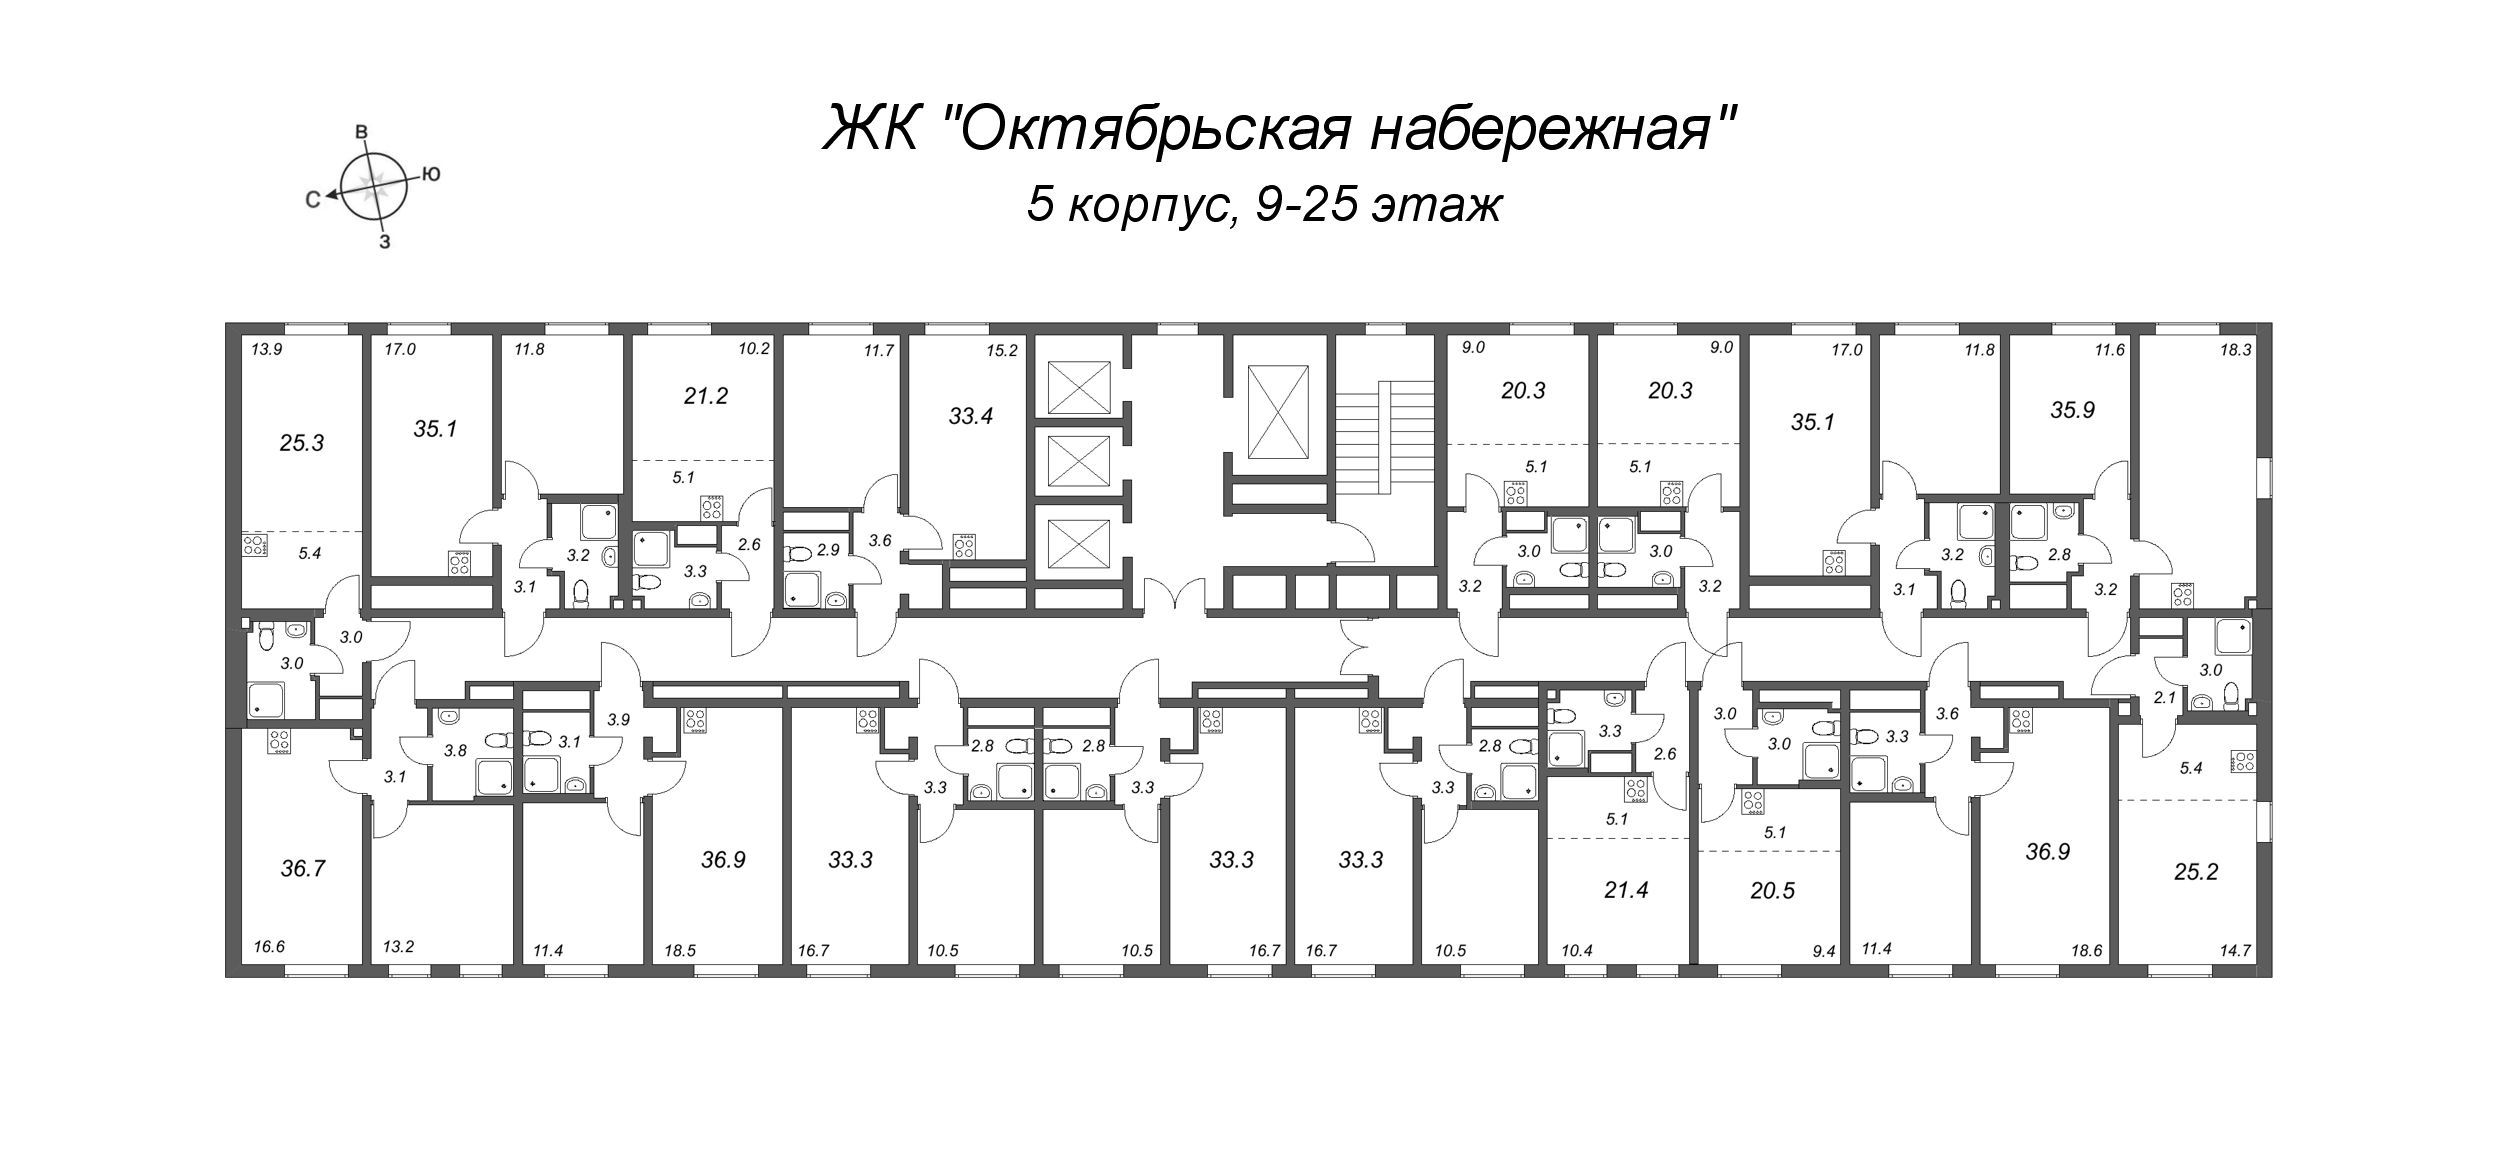 2-комнатная (Евро) квартира, 33.4 м² в ЖК "Октябрьская набережная" - планировка этажа